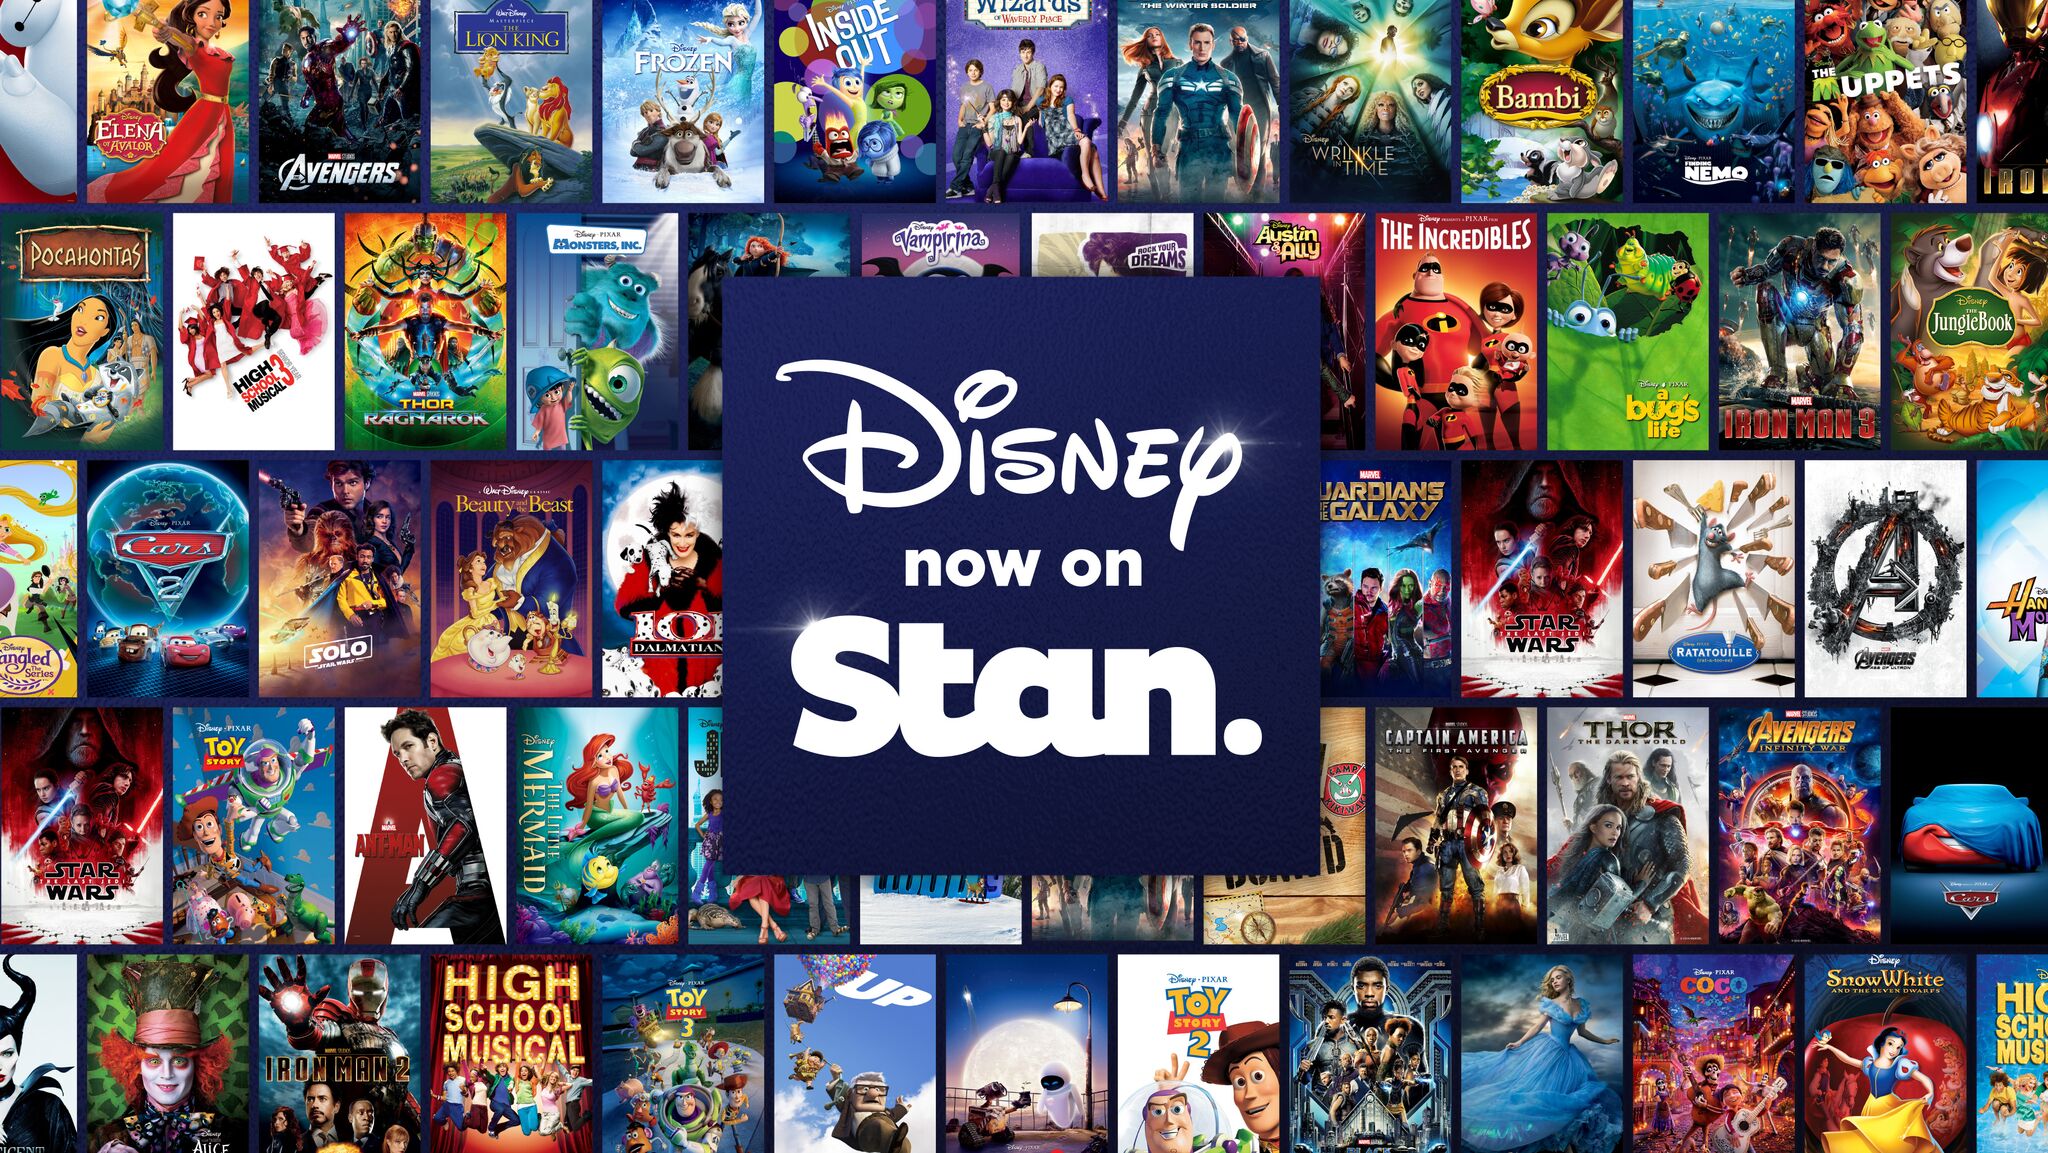 Stan Avustralya Daki Icerik Akisi Icin Disney In Yeni Evi